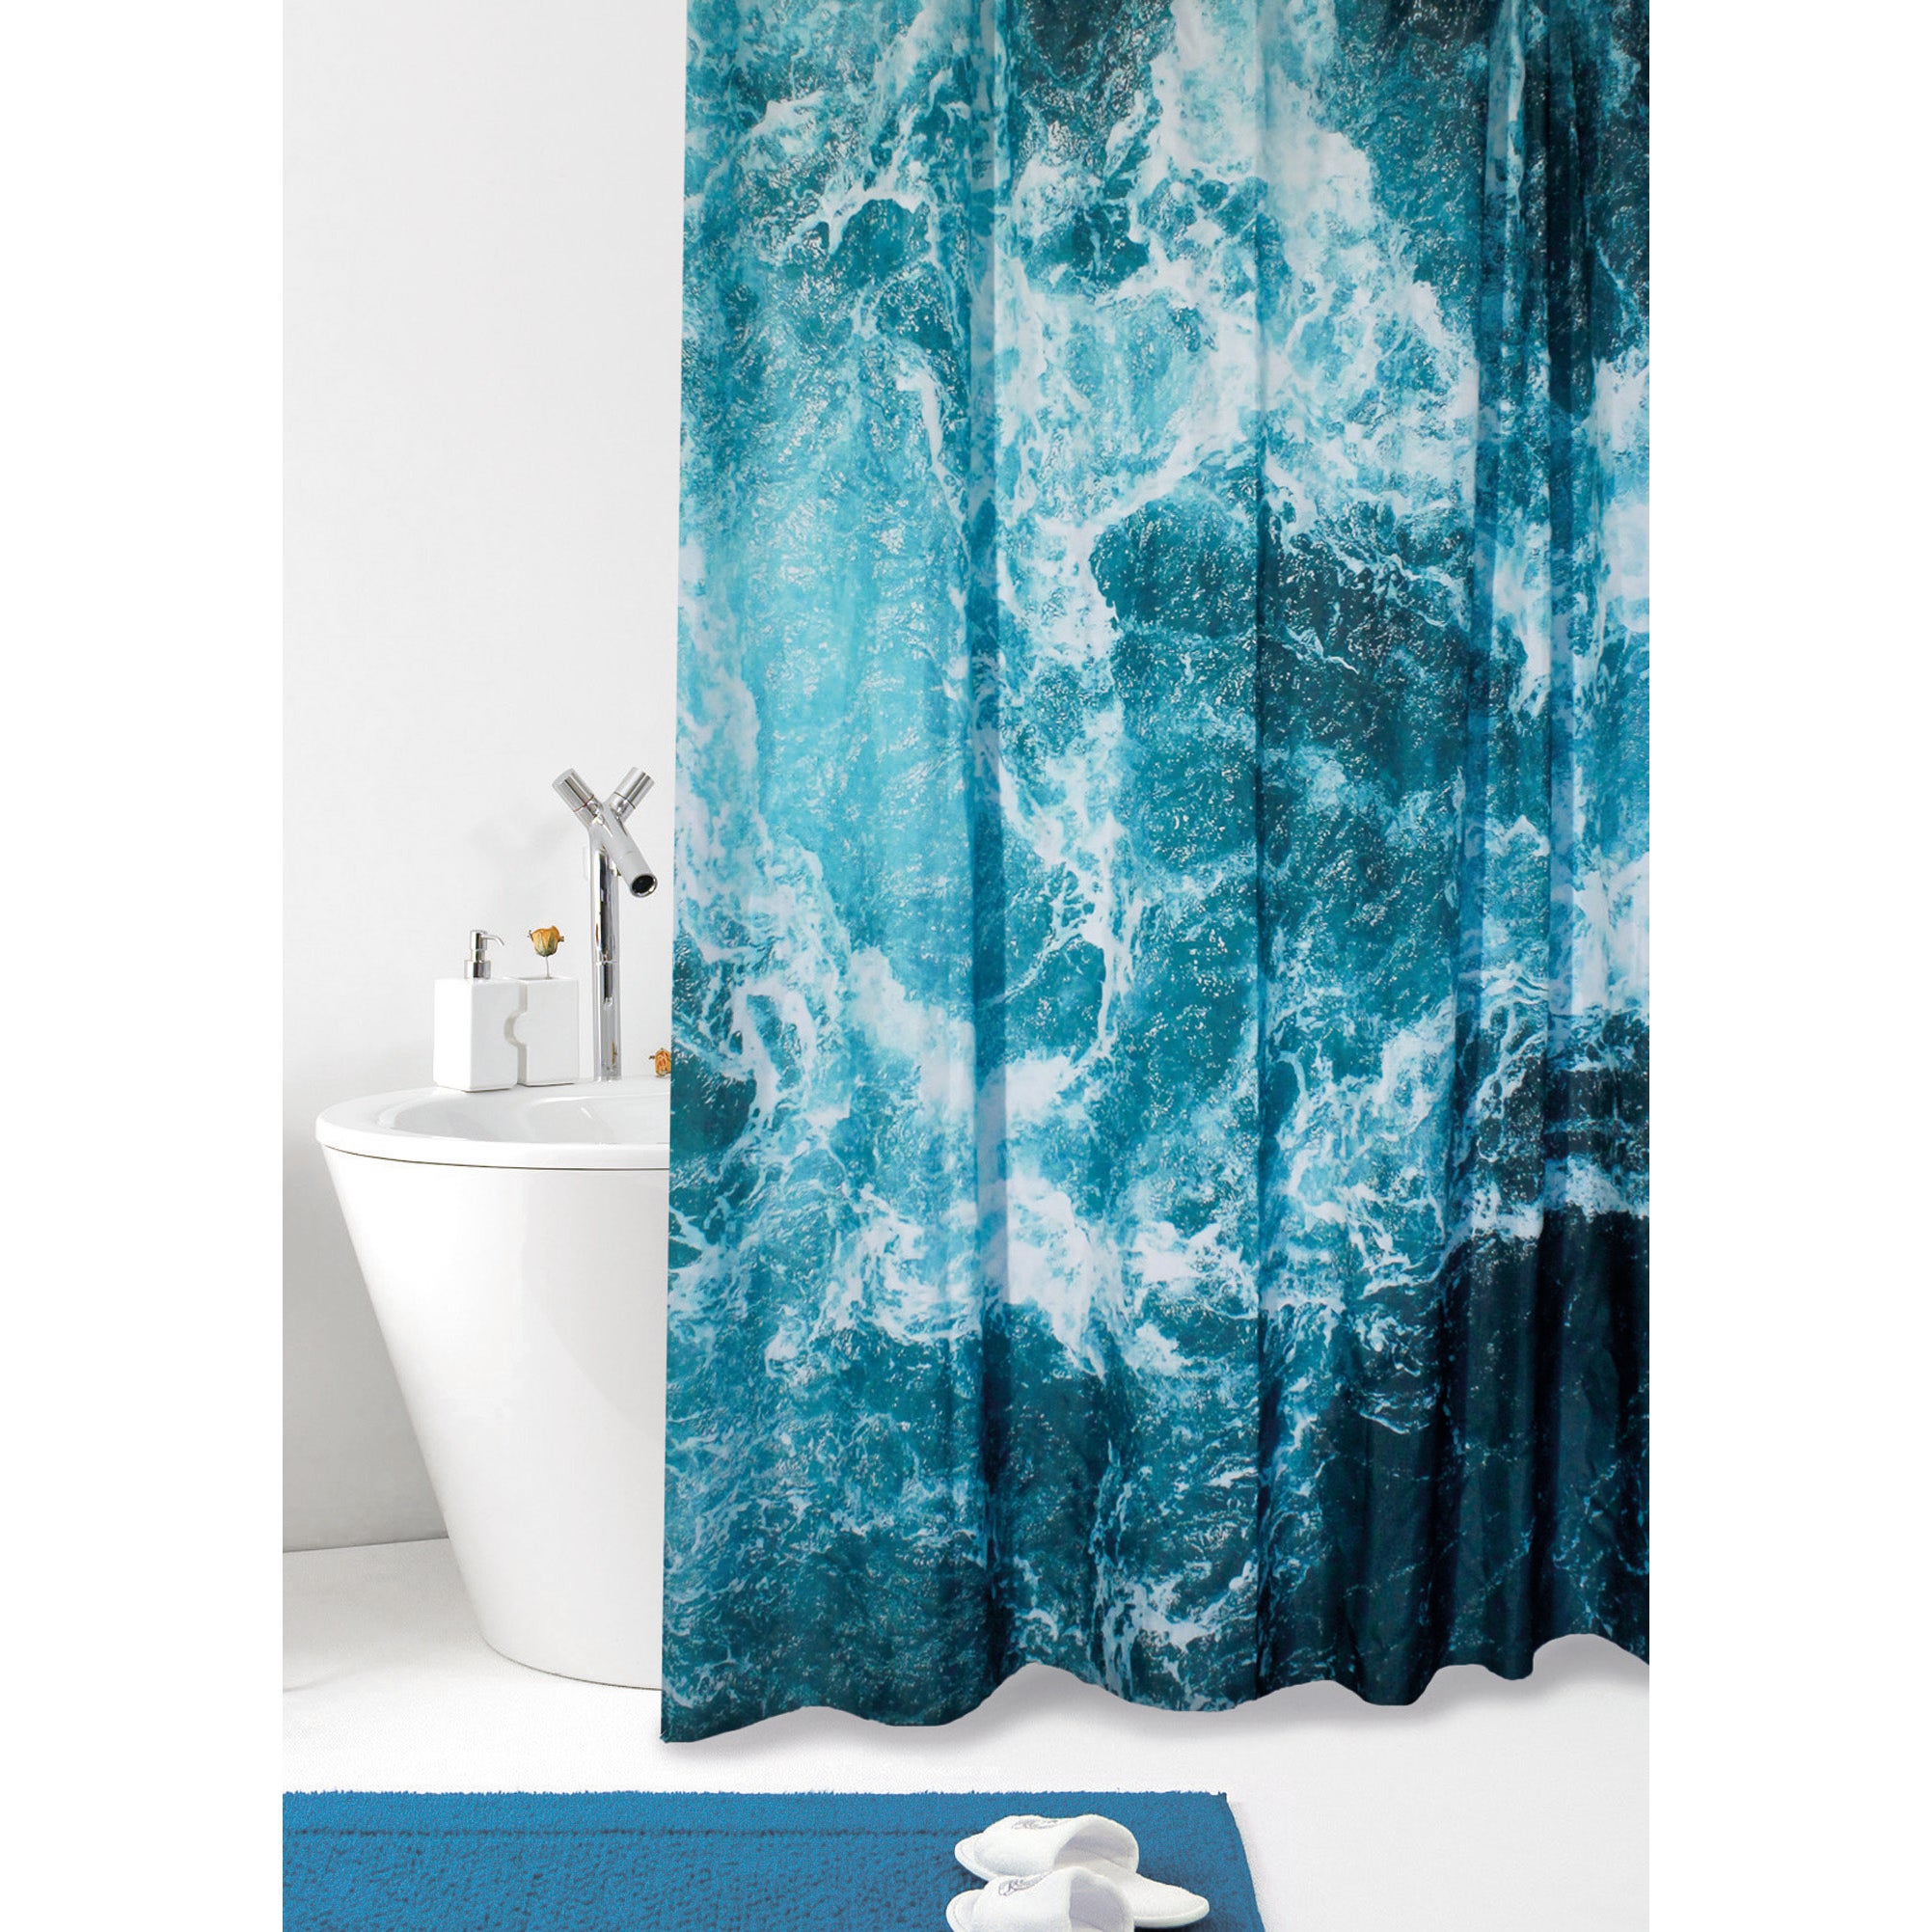 175 cm x 220 cm ABAKUHAUS Nautico Tenda da Doccia Tessuto Set di Decorazioni per Il Bagno con Ganci Blu Bianco per la Vasca da Bagno Marine Starfish